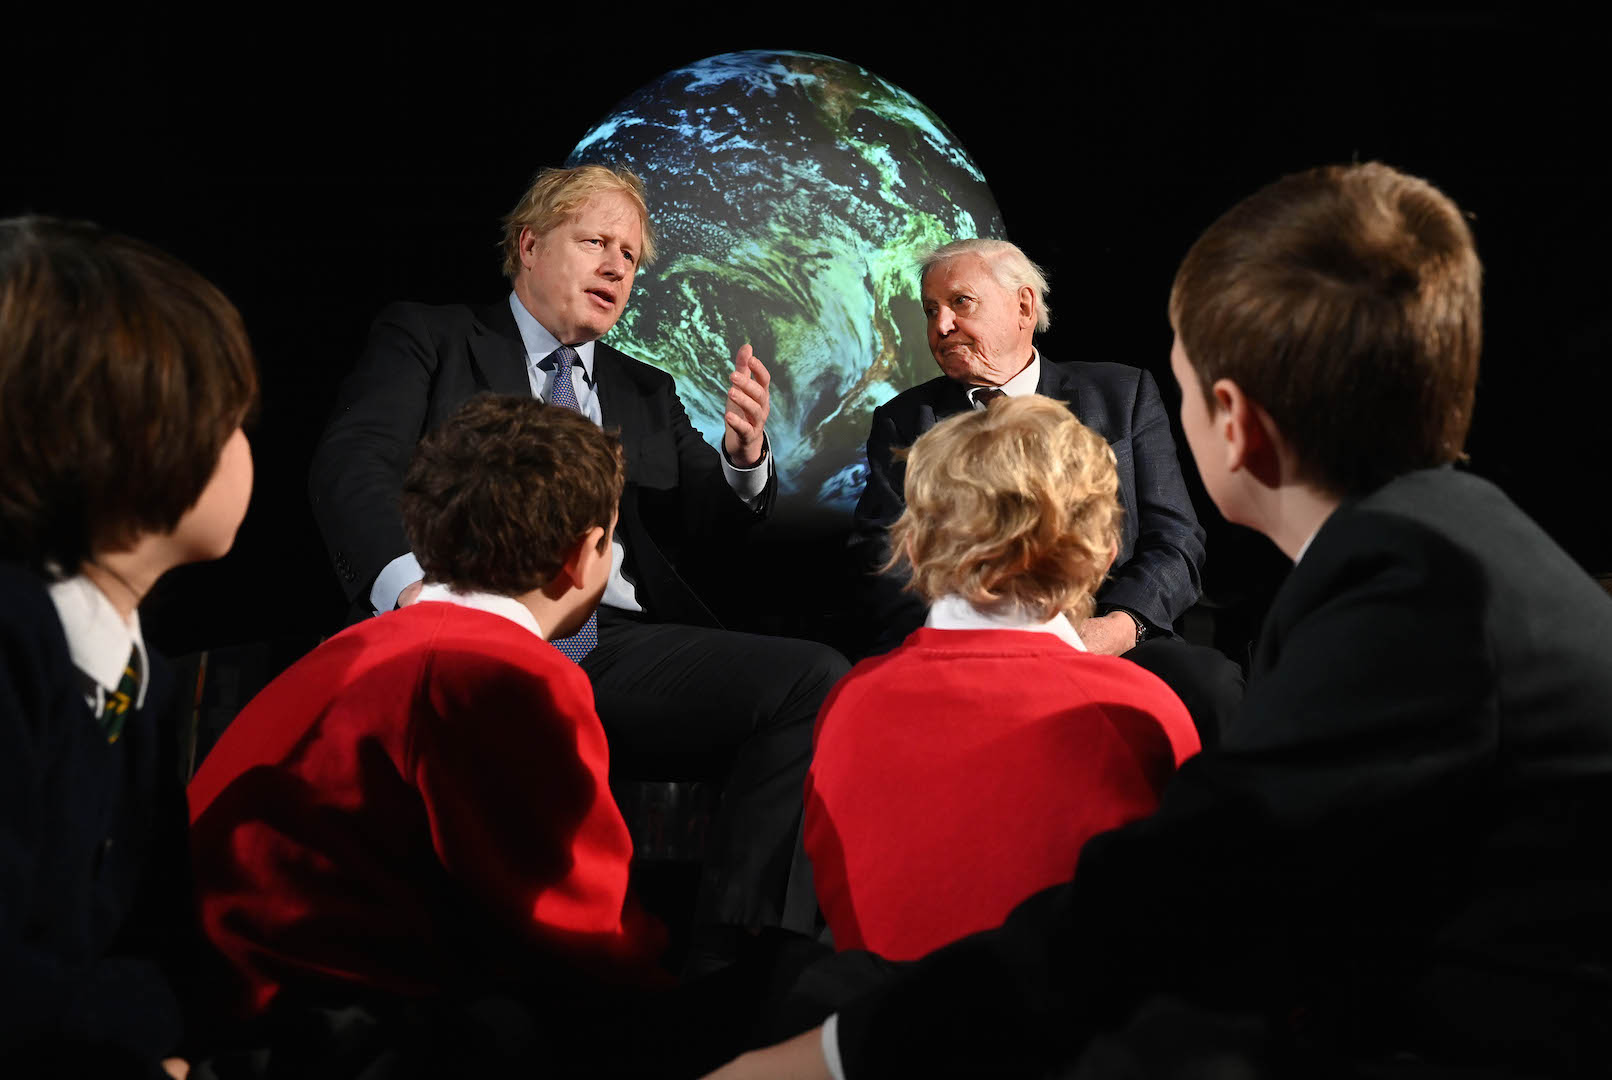 <p>El primer ministro Boris Johnson y el naturalista David Attenborough en el lanzamiento de la COP26 de cambio climático, hoy en duda por el coronavirus (imagen <a href="https://www.flickr.com/photos/number10gov/49487770707/in/photostream/">Andrew Parsons / No10 Downing Street</a>)</p>